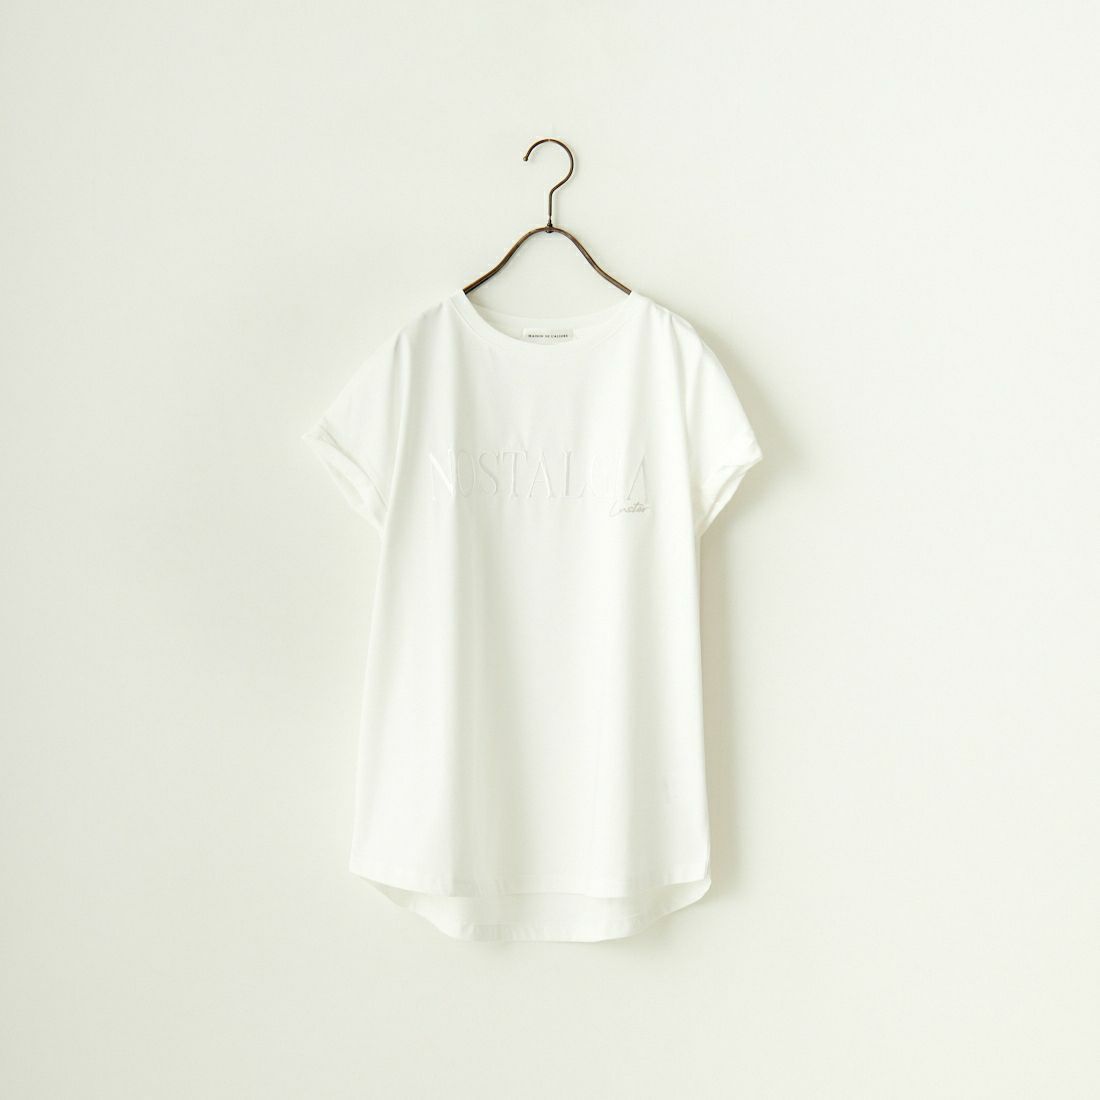 Maison de L'allure [メゾン ドゥ ラリュール] 捻りフレンチスリーブ ロゴ刺繍Tシャツ [24112016] 02 OFF